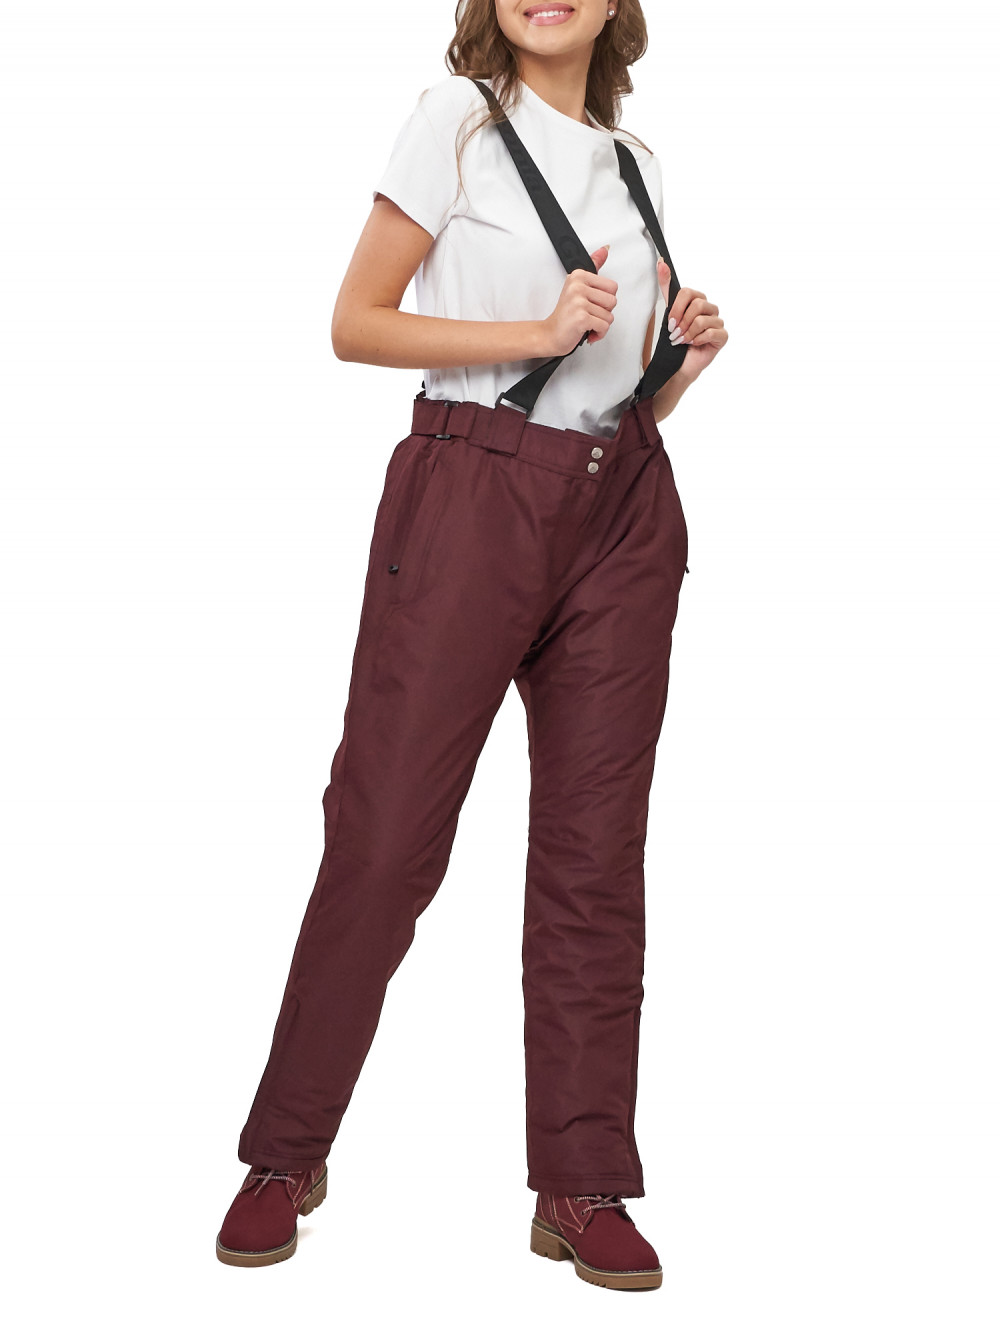 Полукомбинезон брюки горнолыжные женские big size AD66413Bo бордового цвета, 58